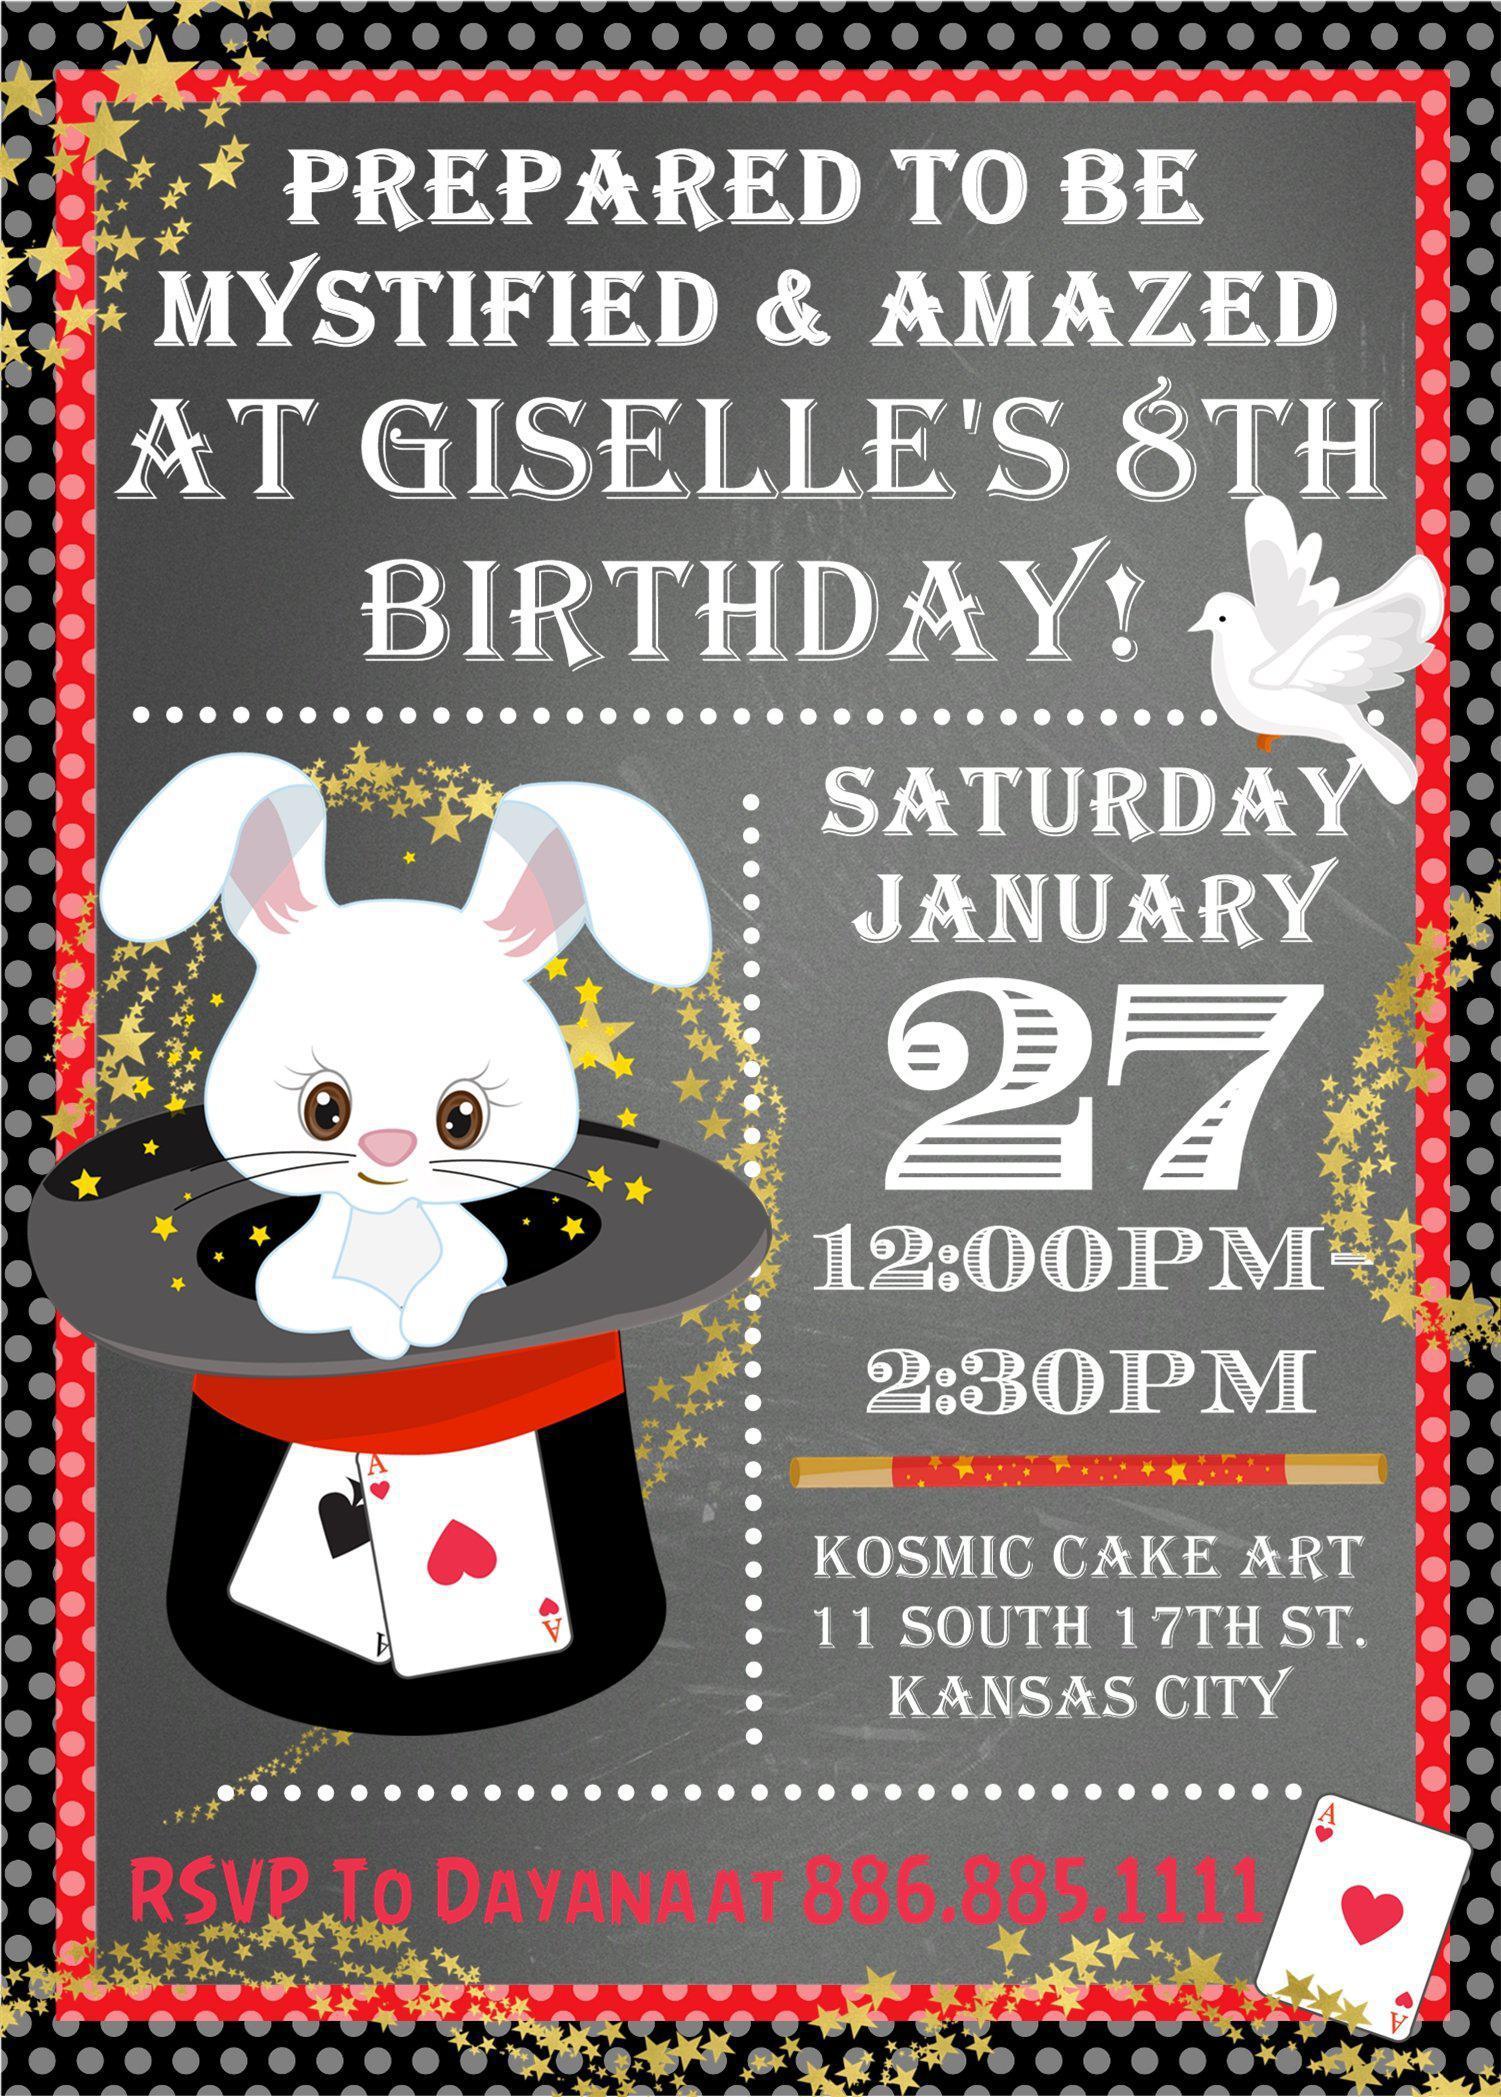 Magic Birthday Party Invitations